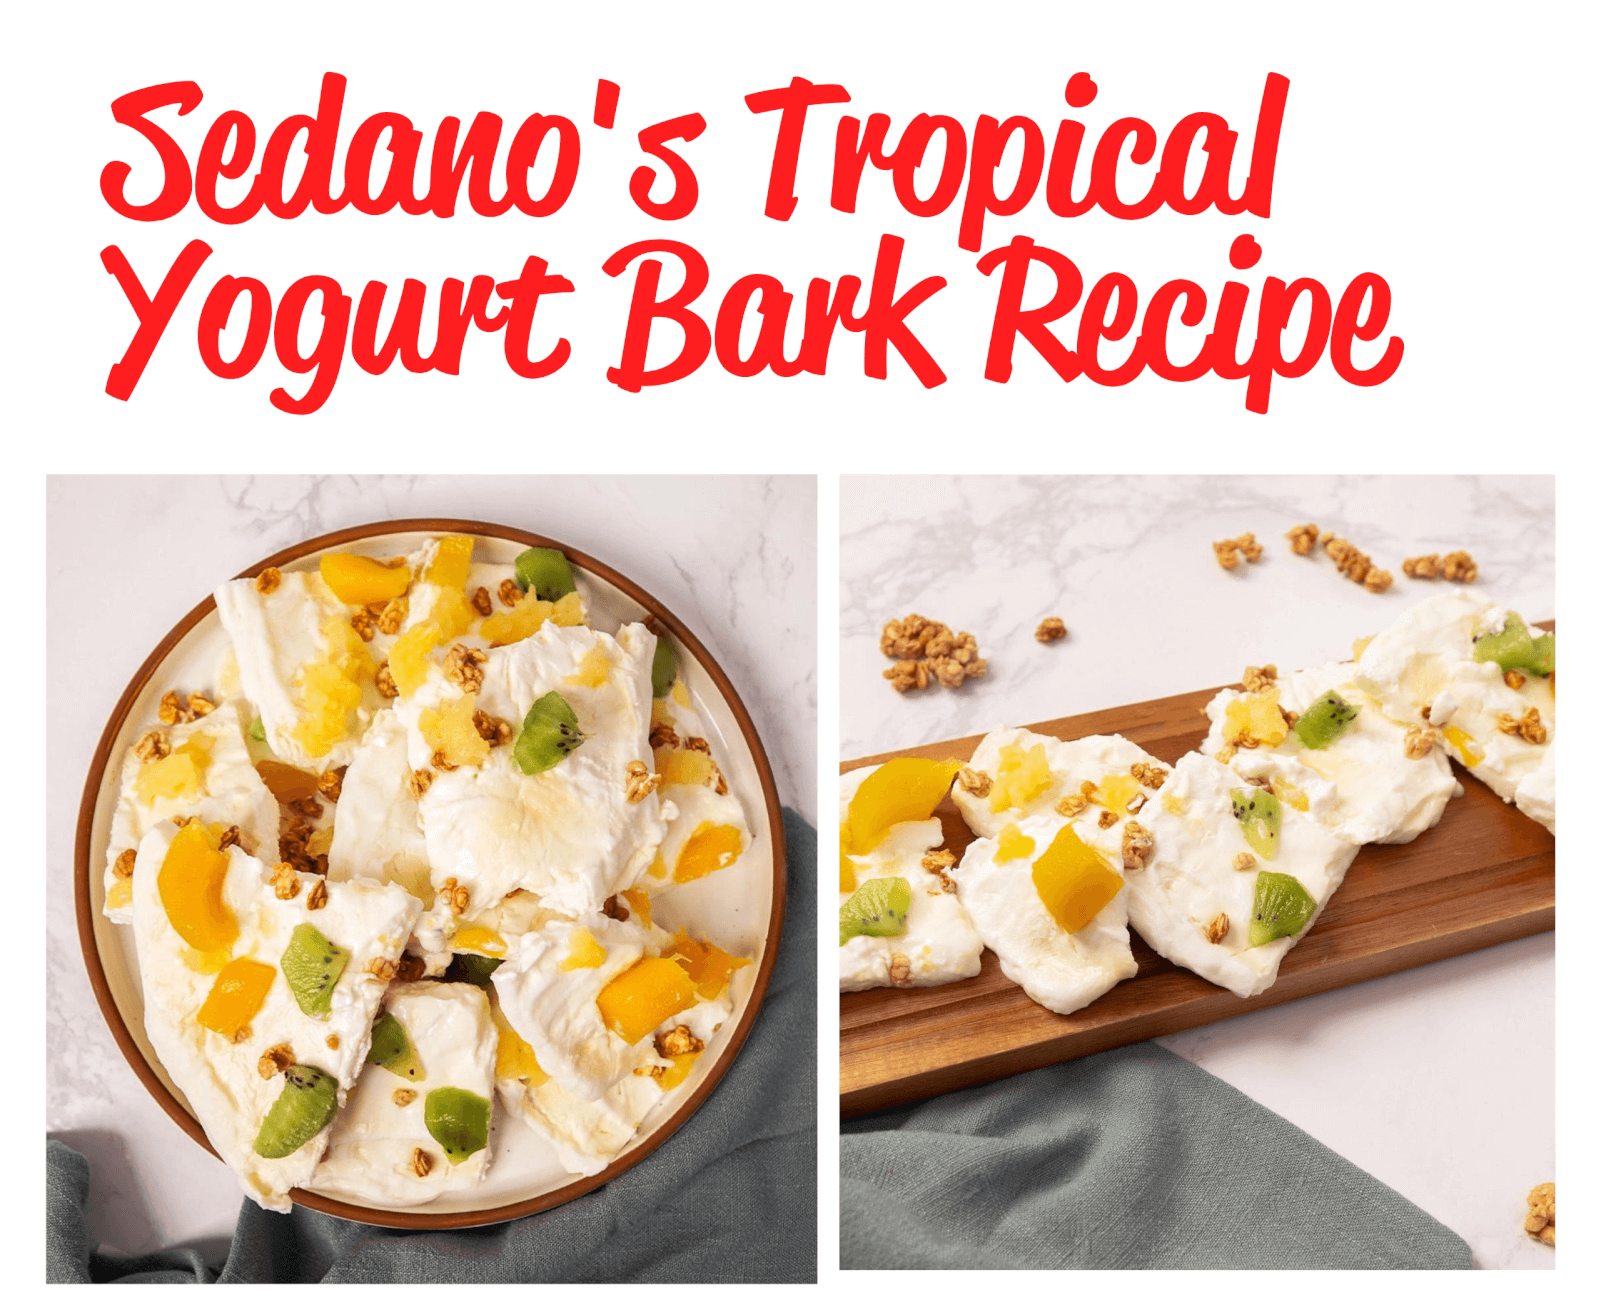 Sedanos Tropical Yogurt Bark Recipe at Sedanos.com